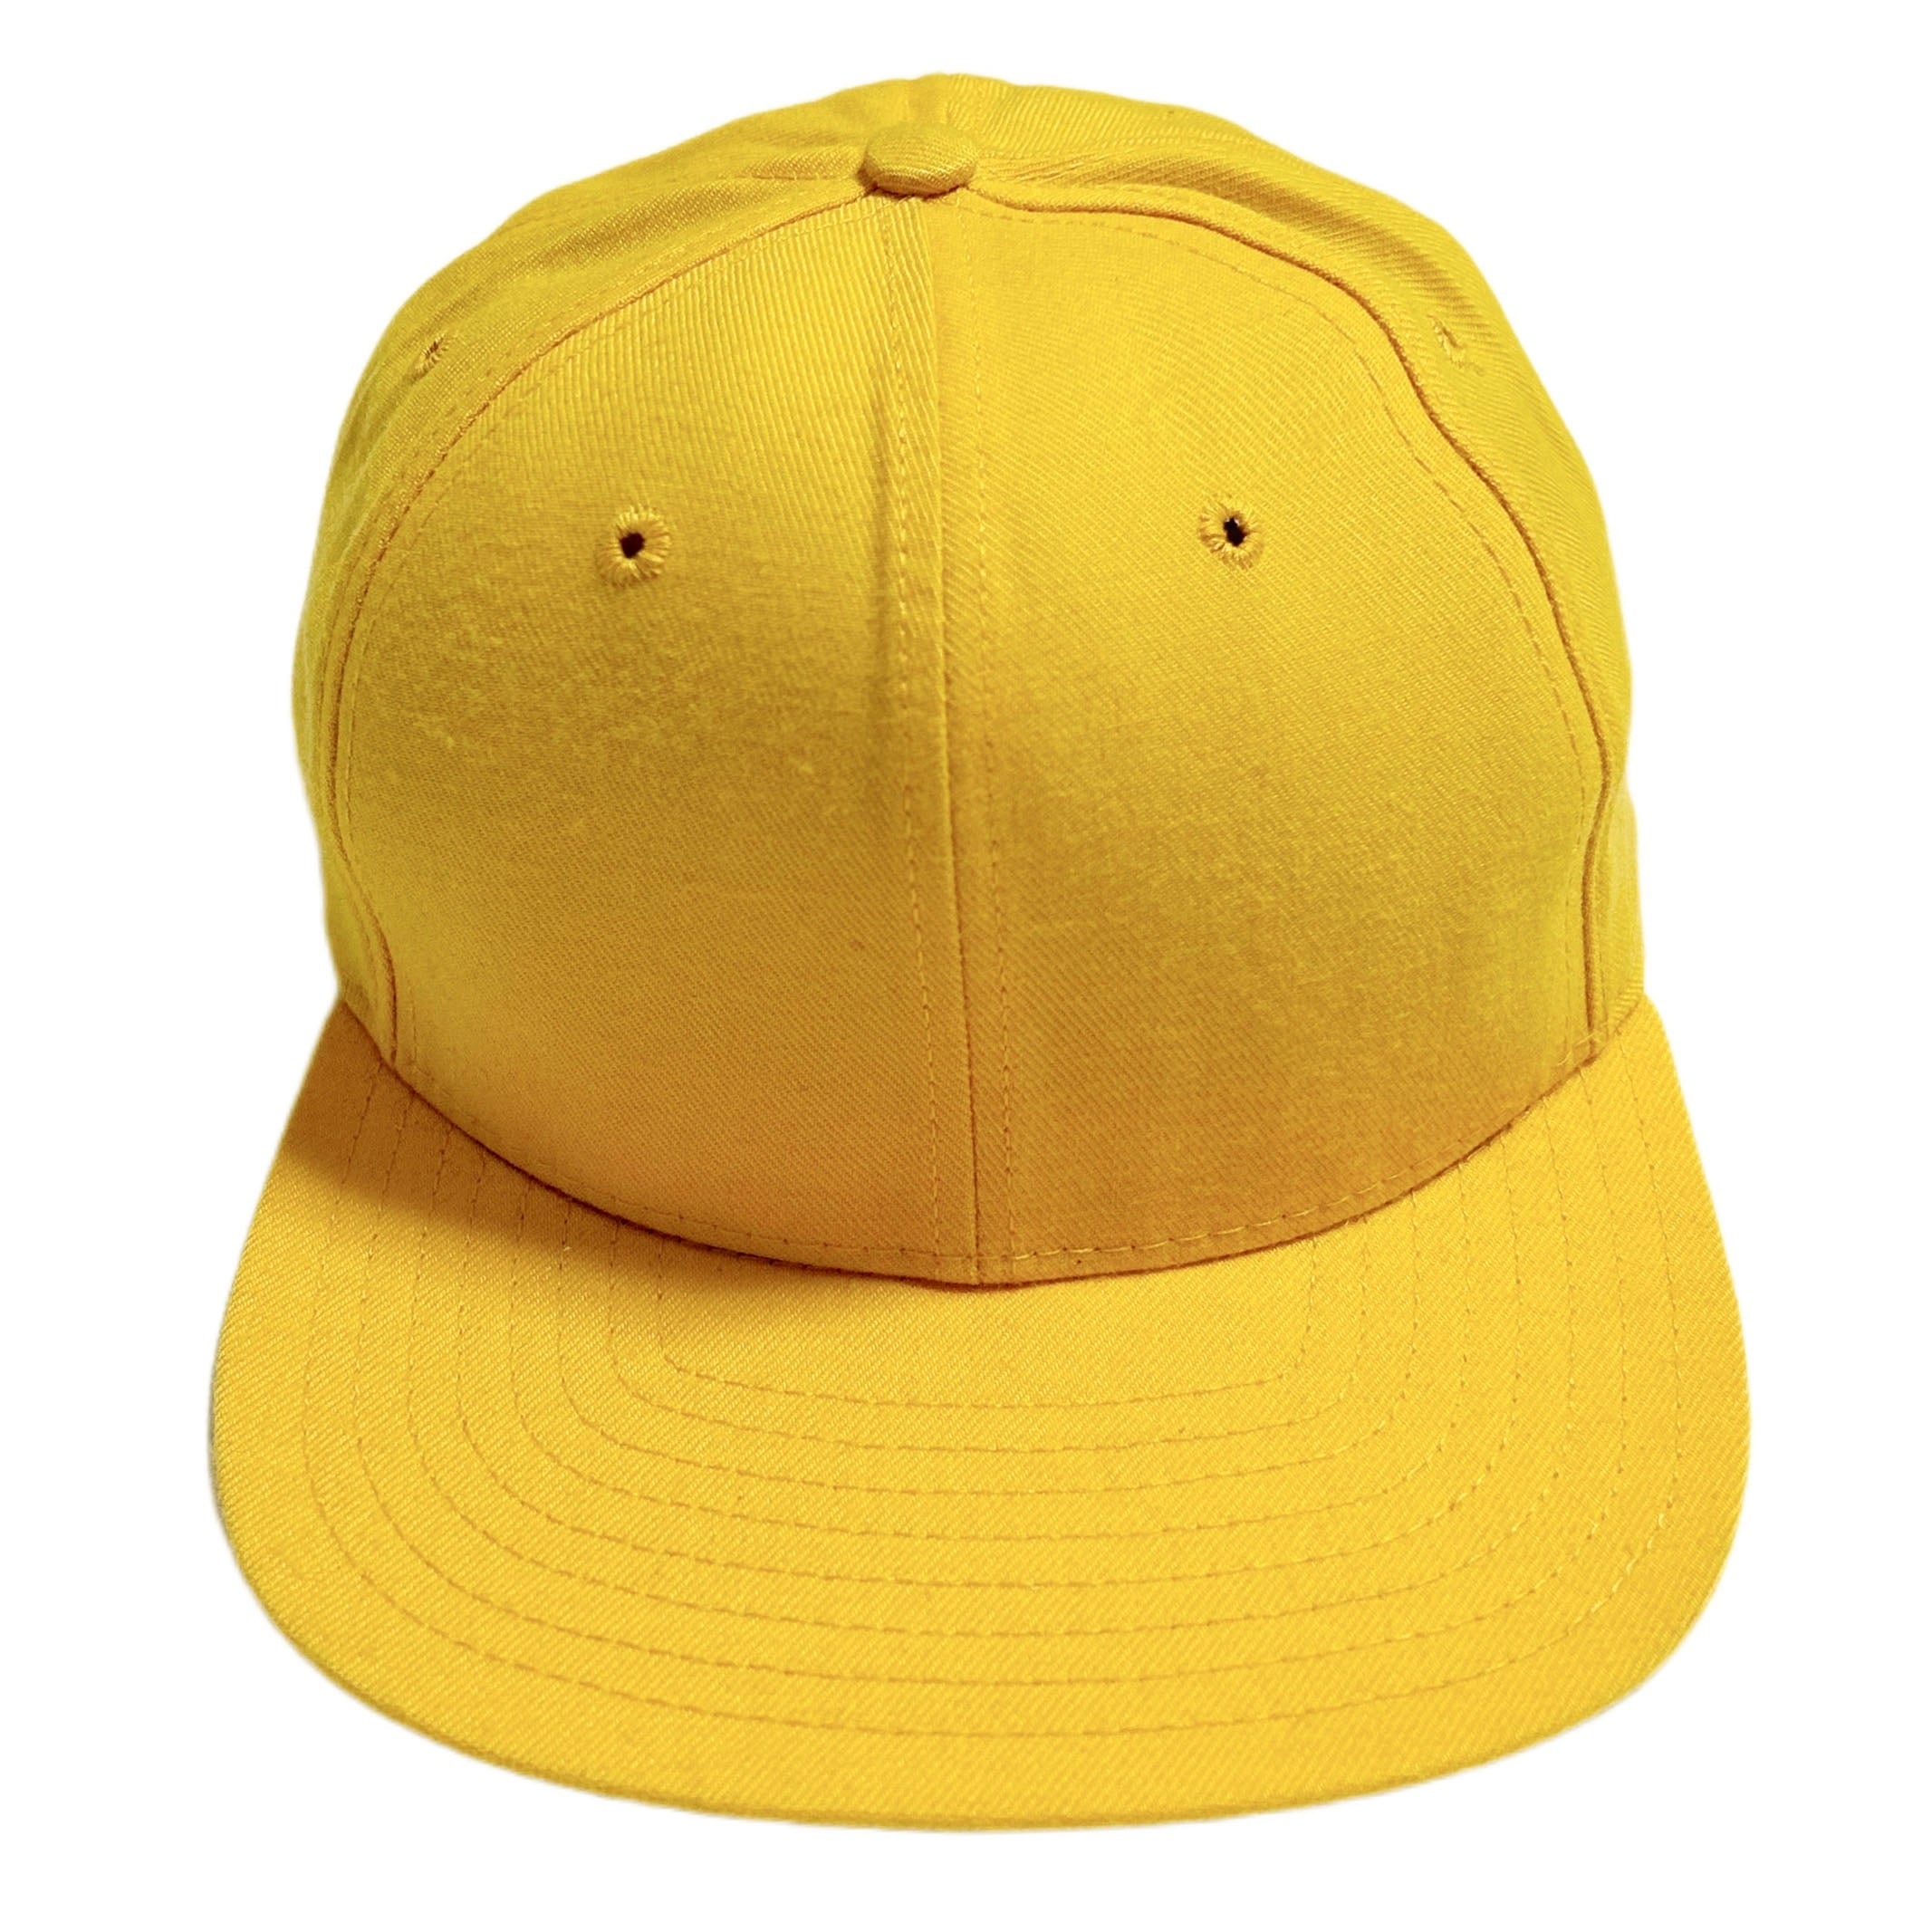 90s USA製 DeLONG キャップ 帽子